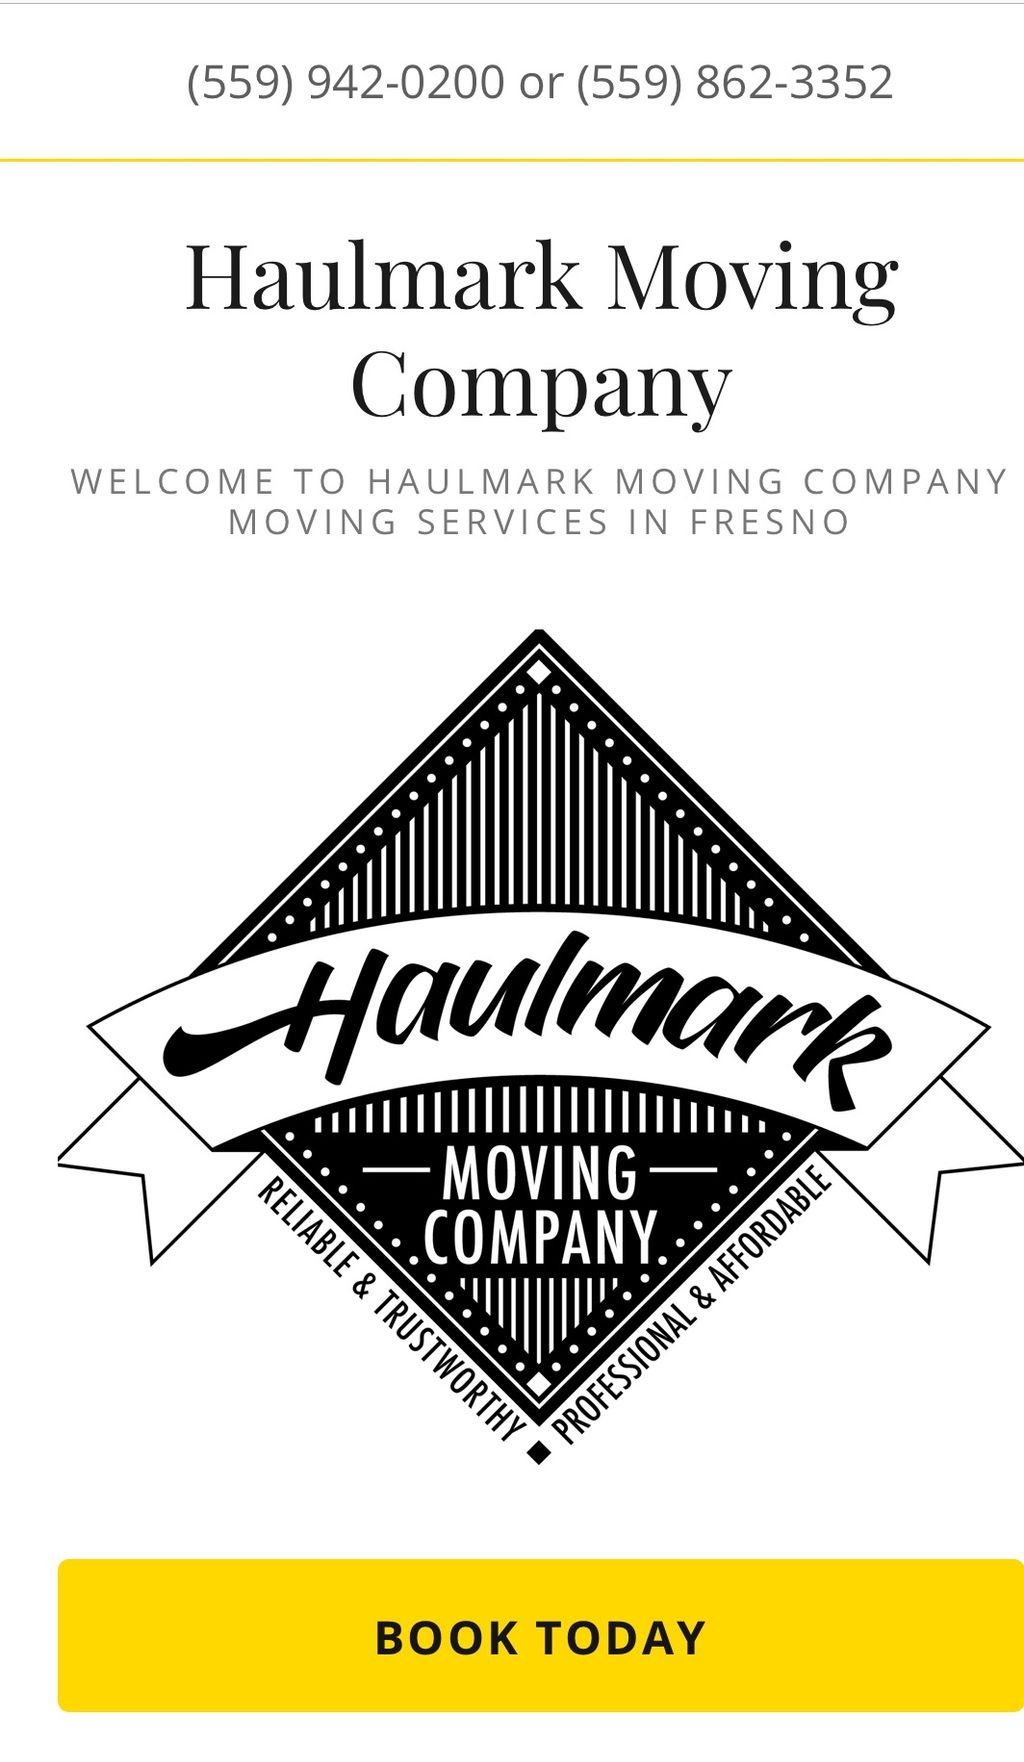 Haulmark Moving Company